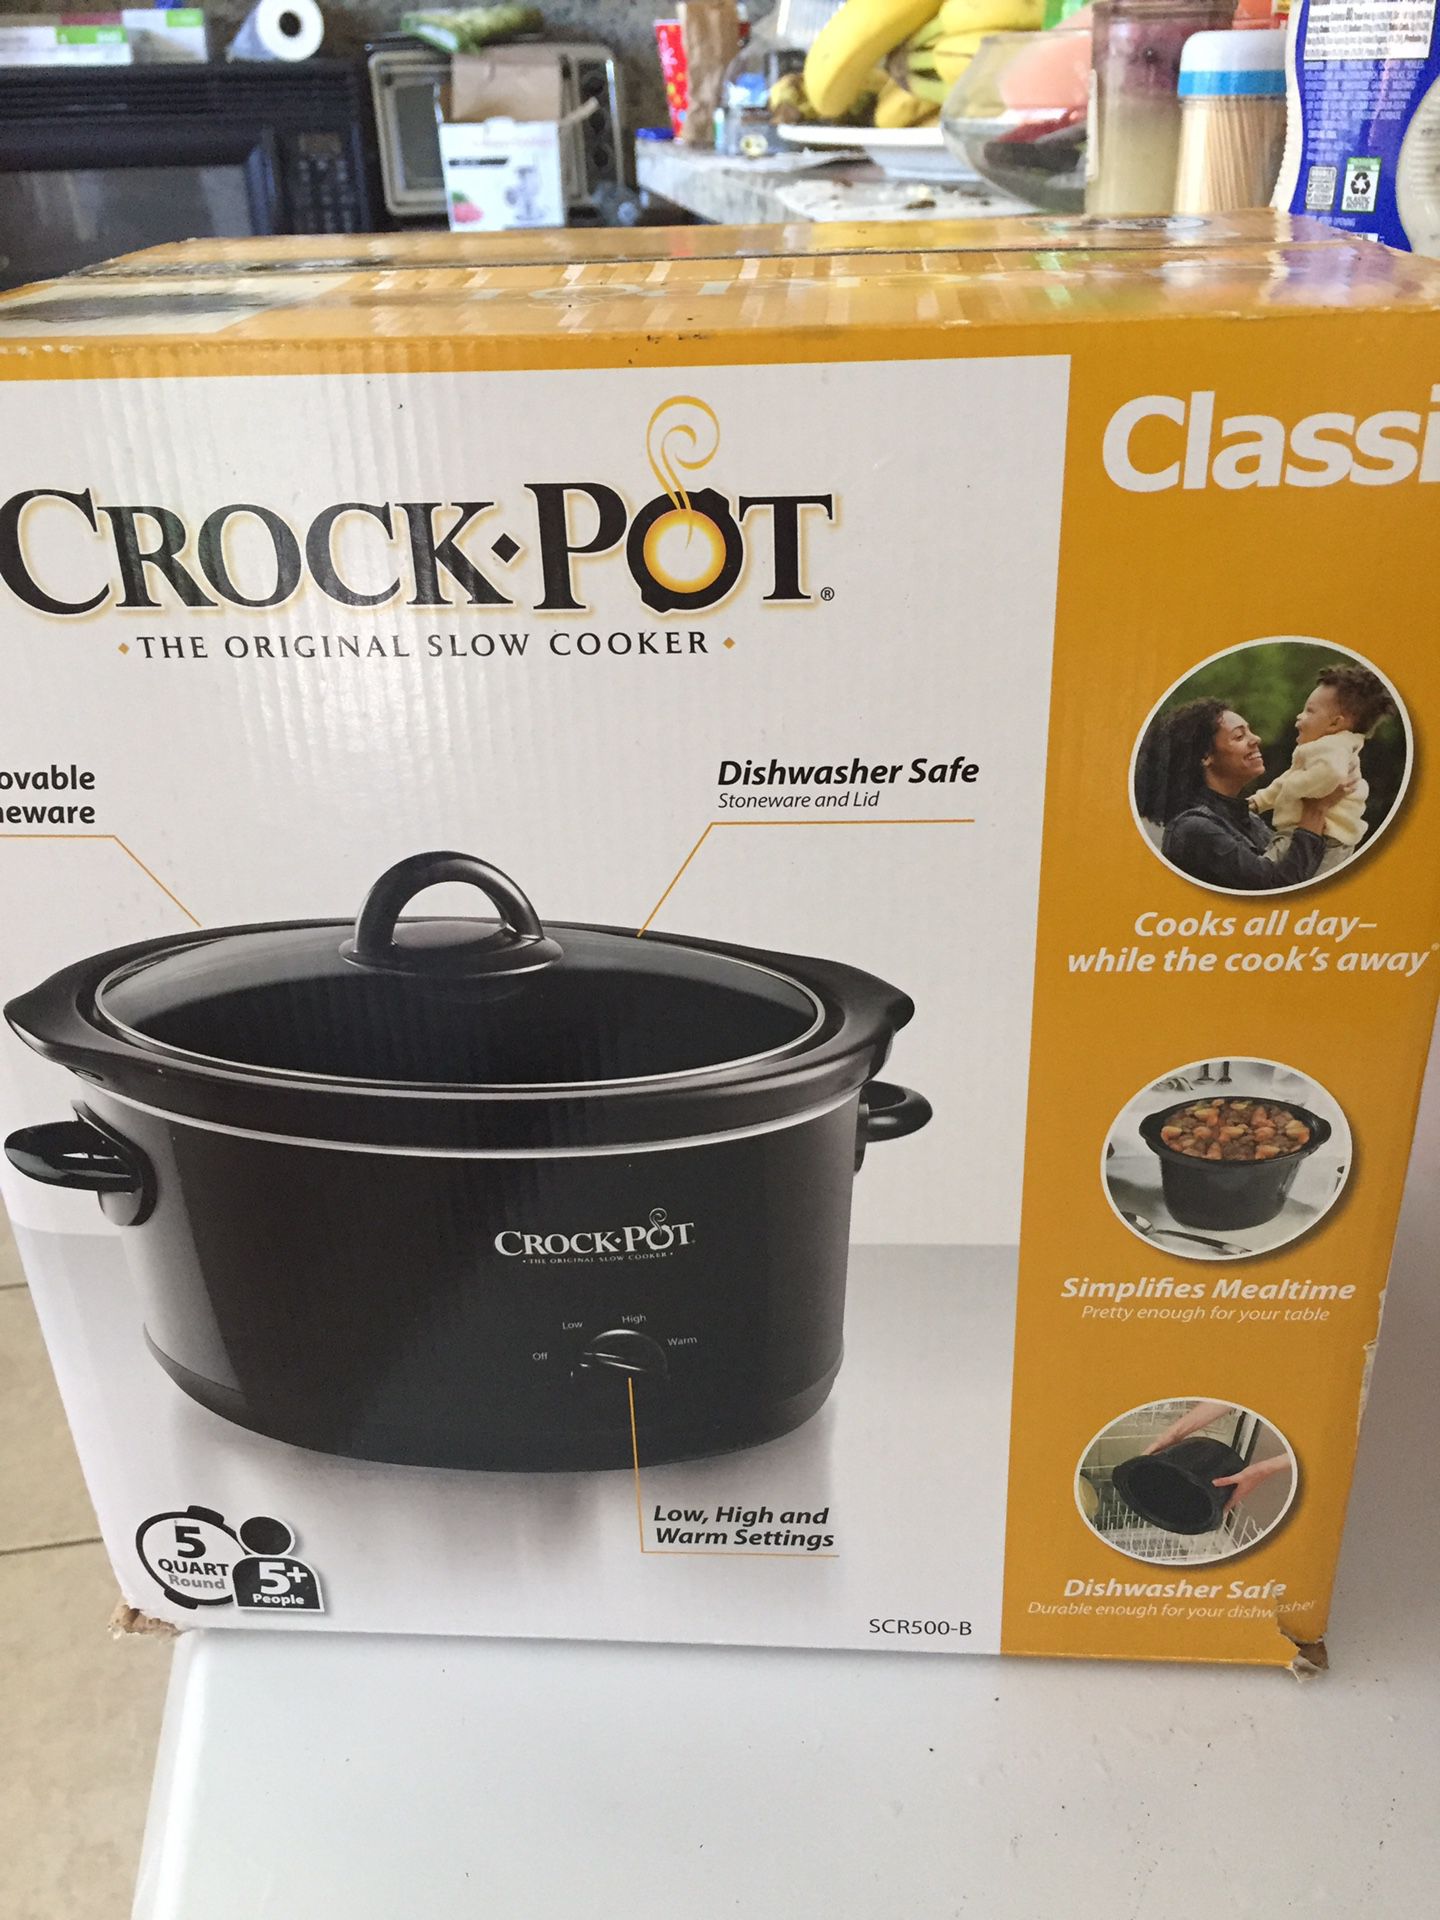 NEW Crock-Pot 5-Quart Slow Cooker